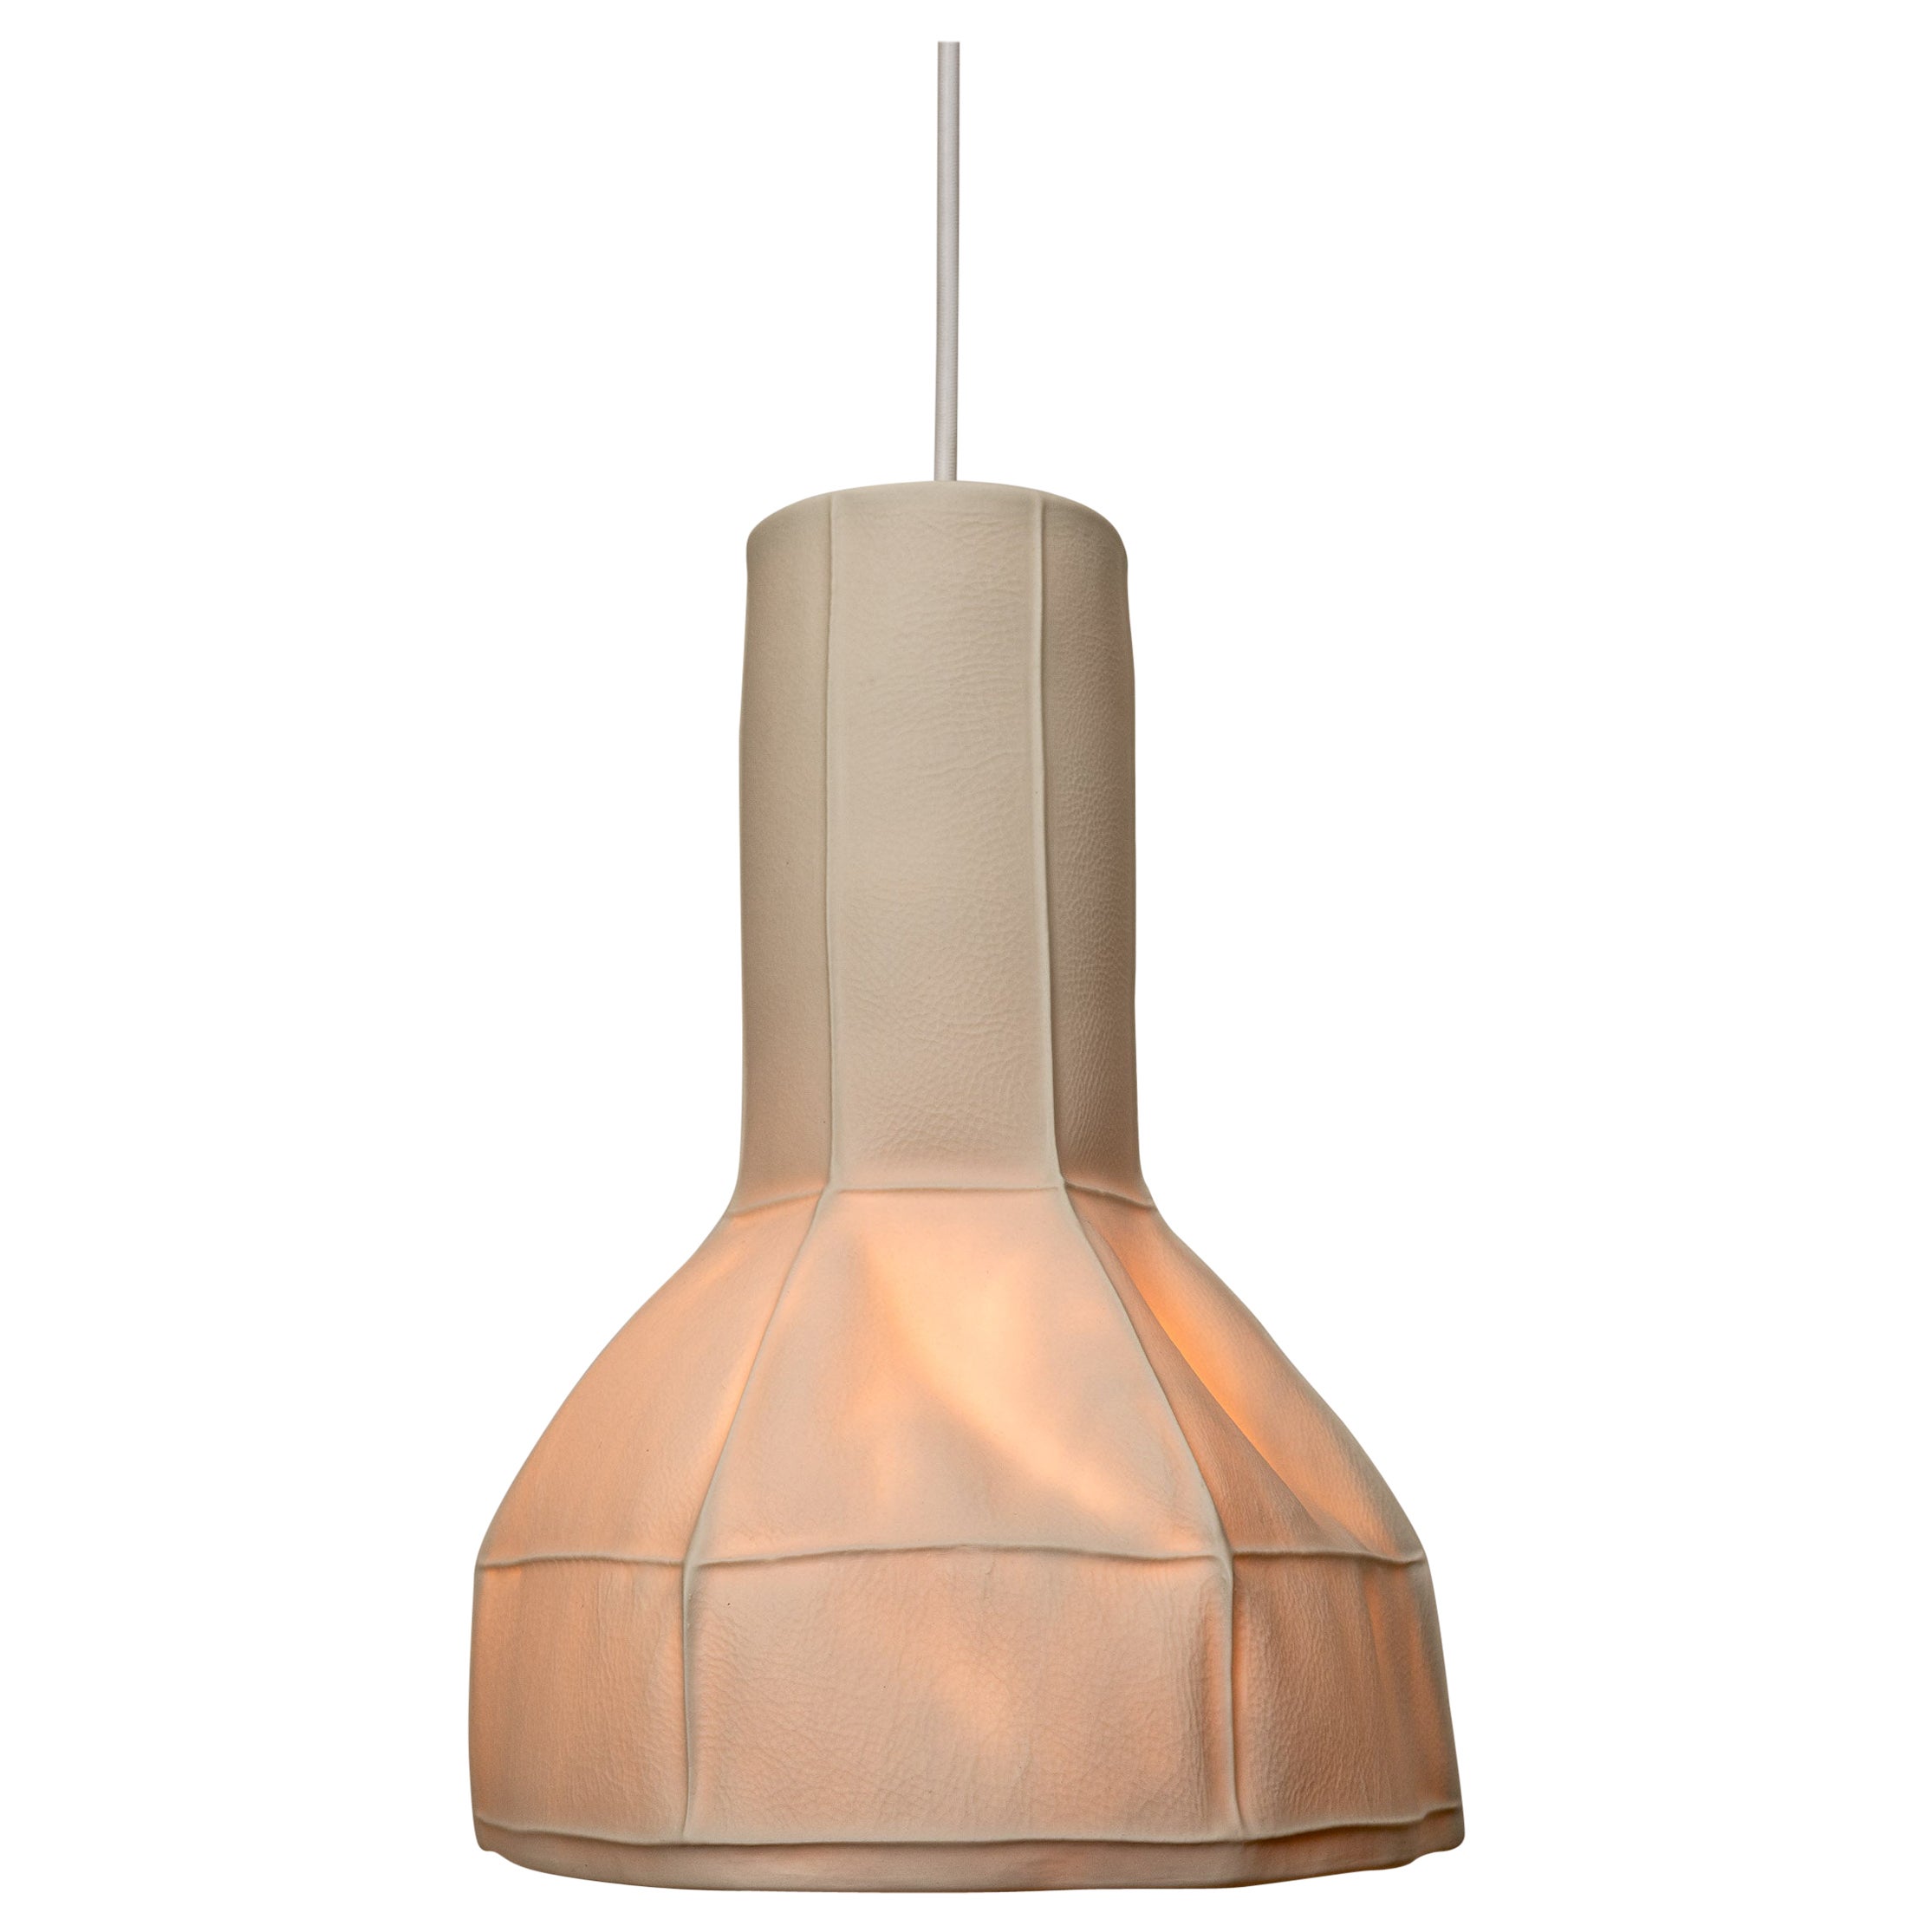 Lampe à suspension Kawa 05, en porcelaine organique et moderne blanche, moulée en cuir